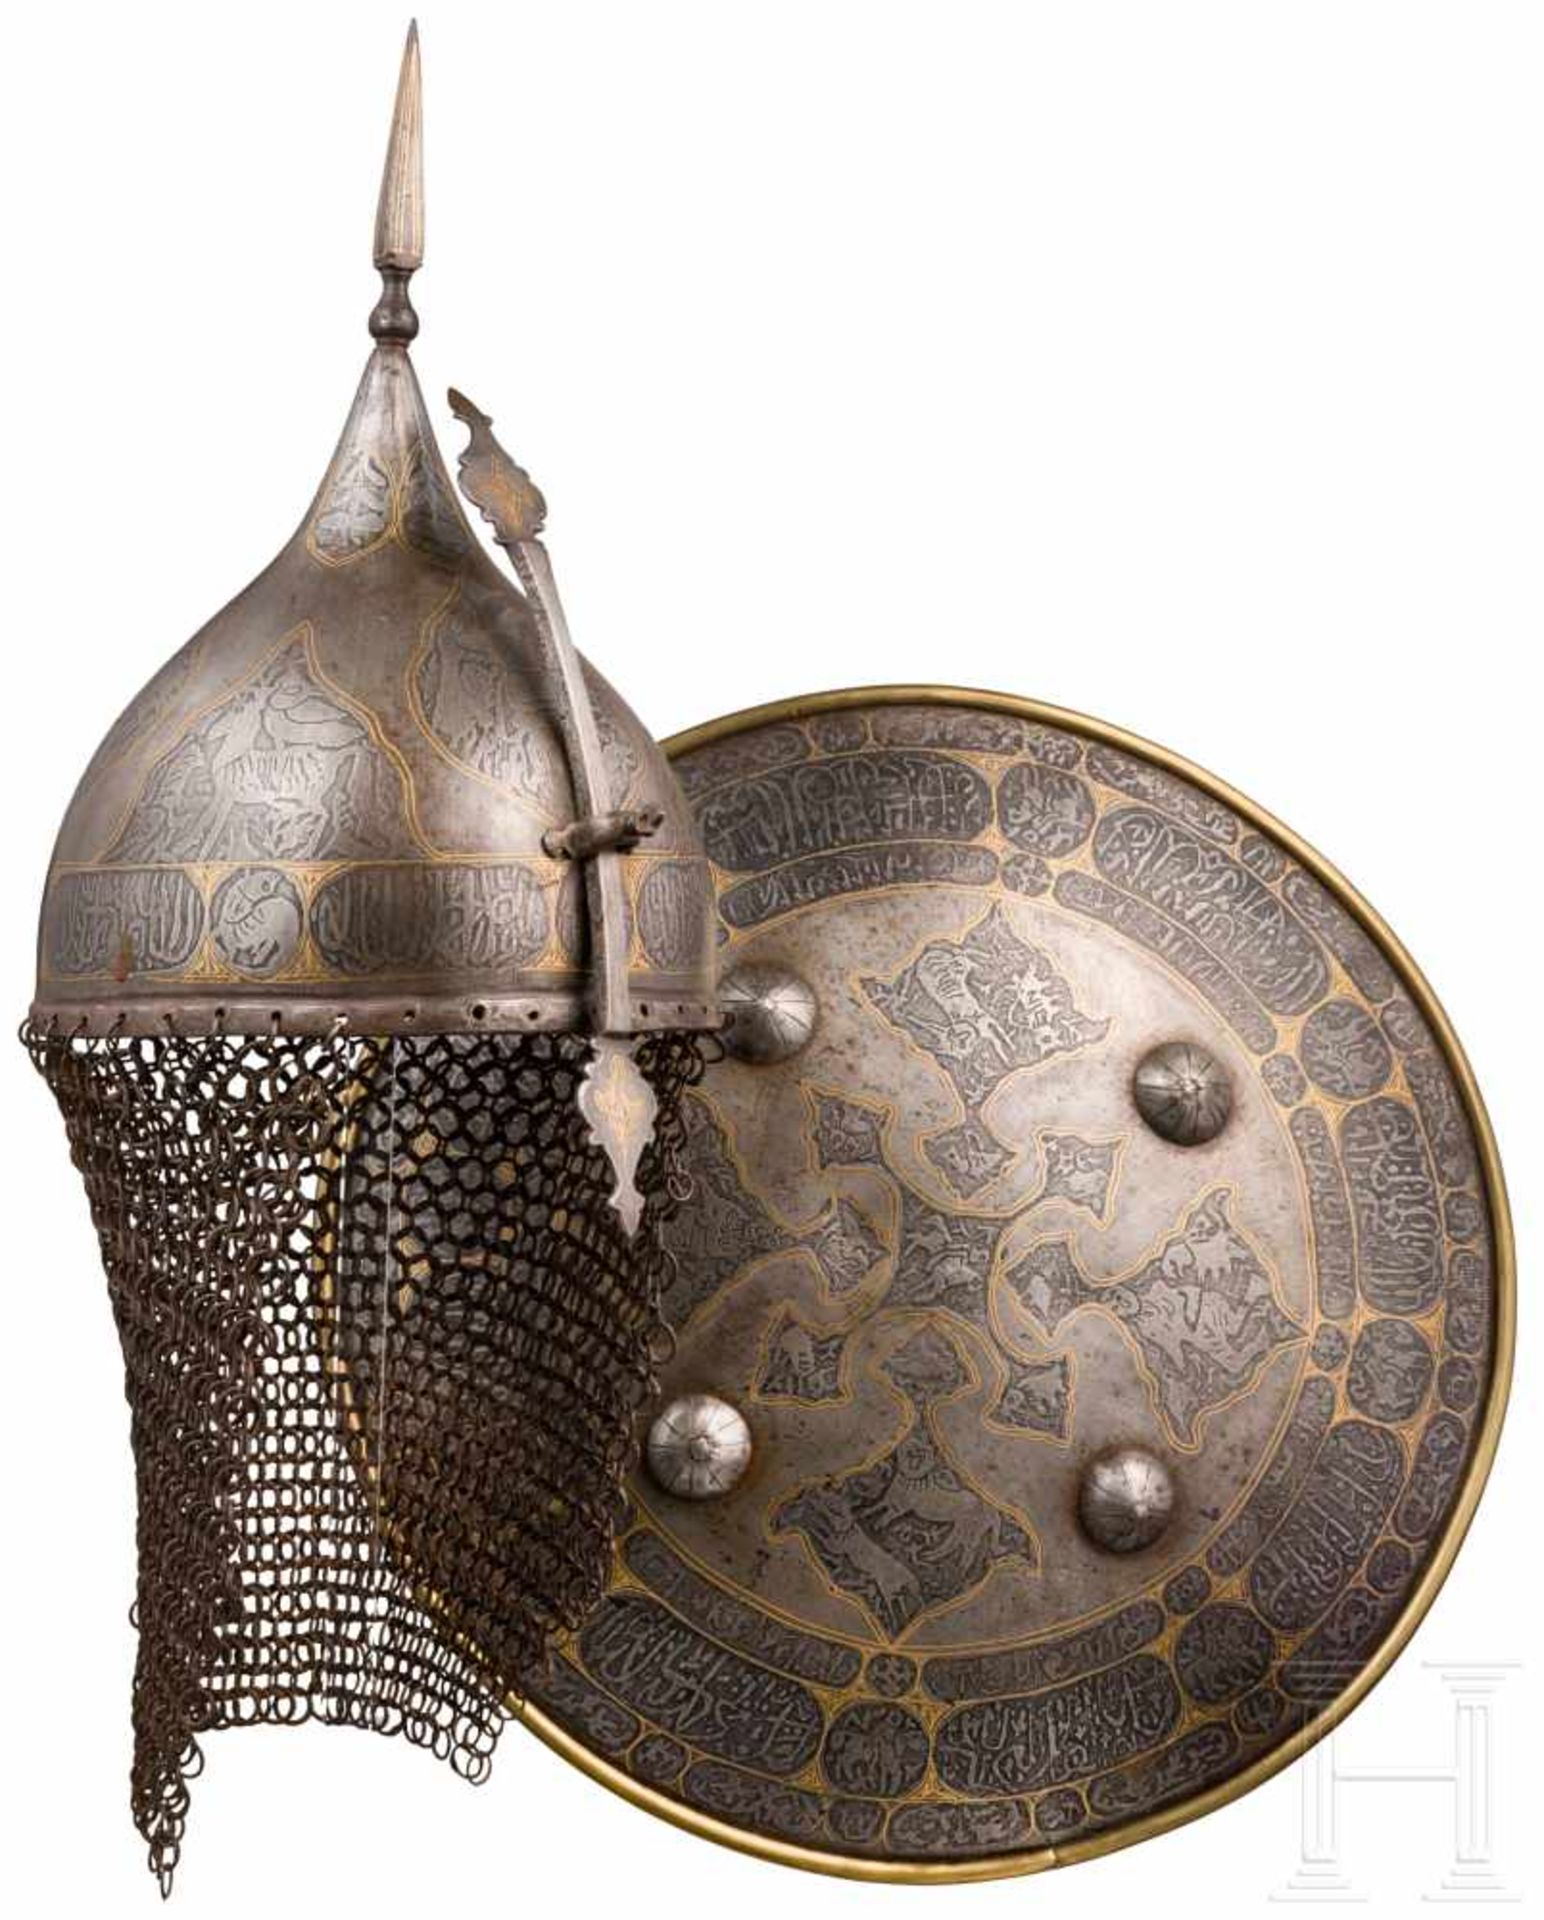 Geätztes und goldtauschiertes Rüstungsset, Persien, um 1900Helm mit einteilig geschlagener, spitz